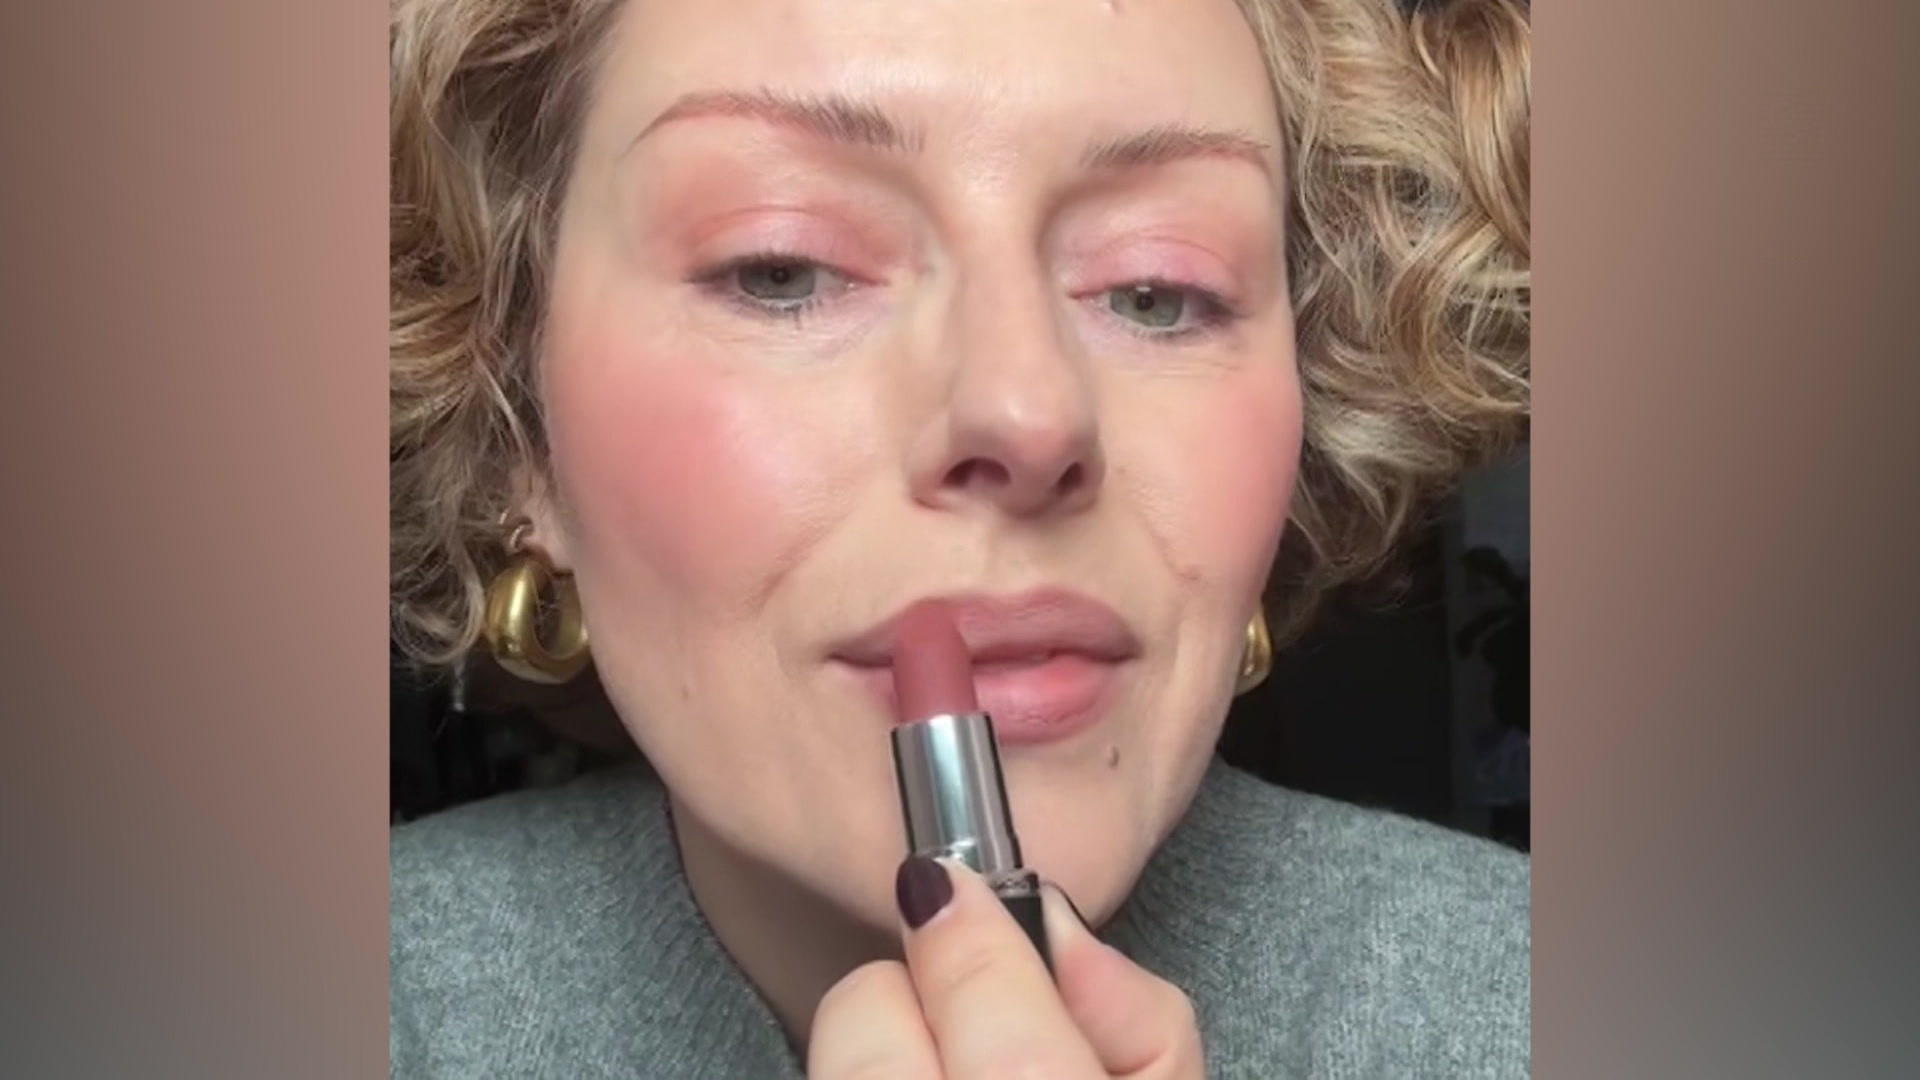 Fast jeder trägt Lippenstift falsch auf! Make-up Künstlerin verrät Trick